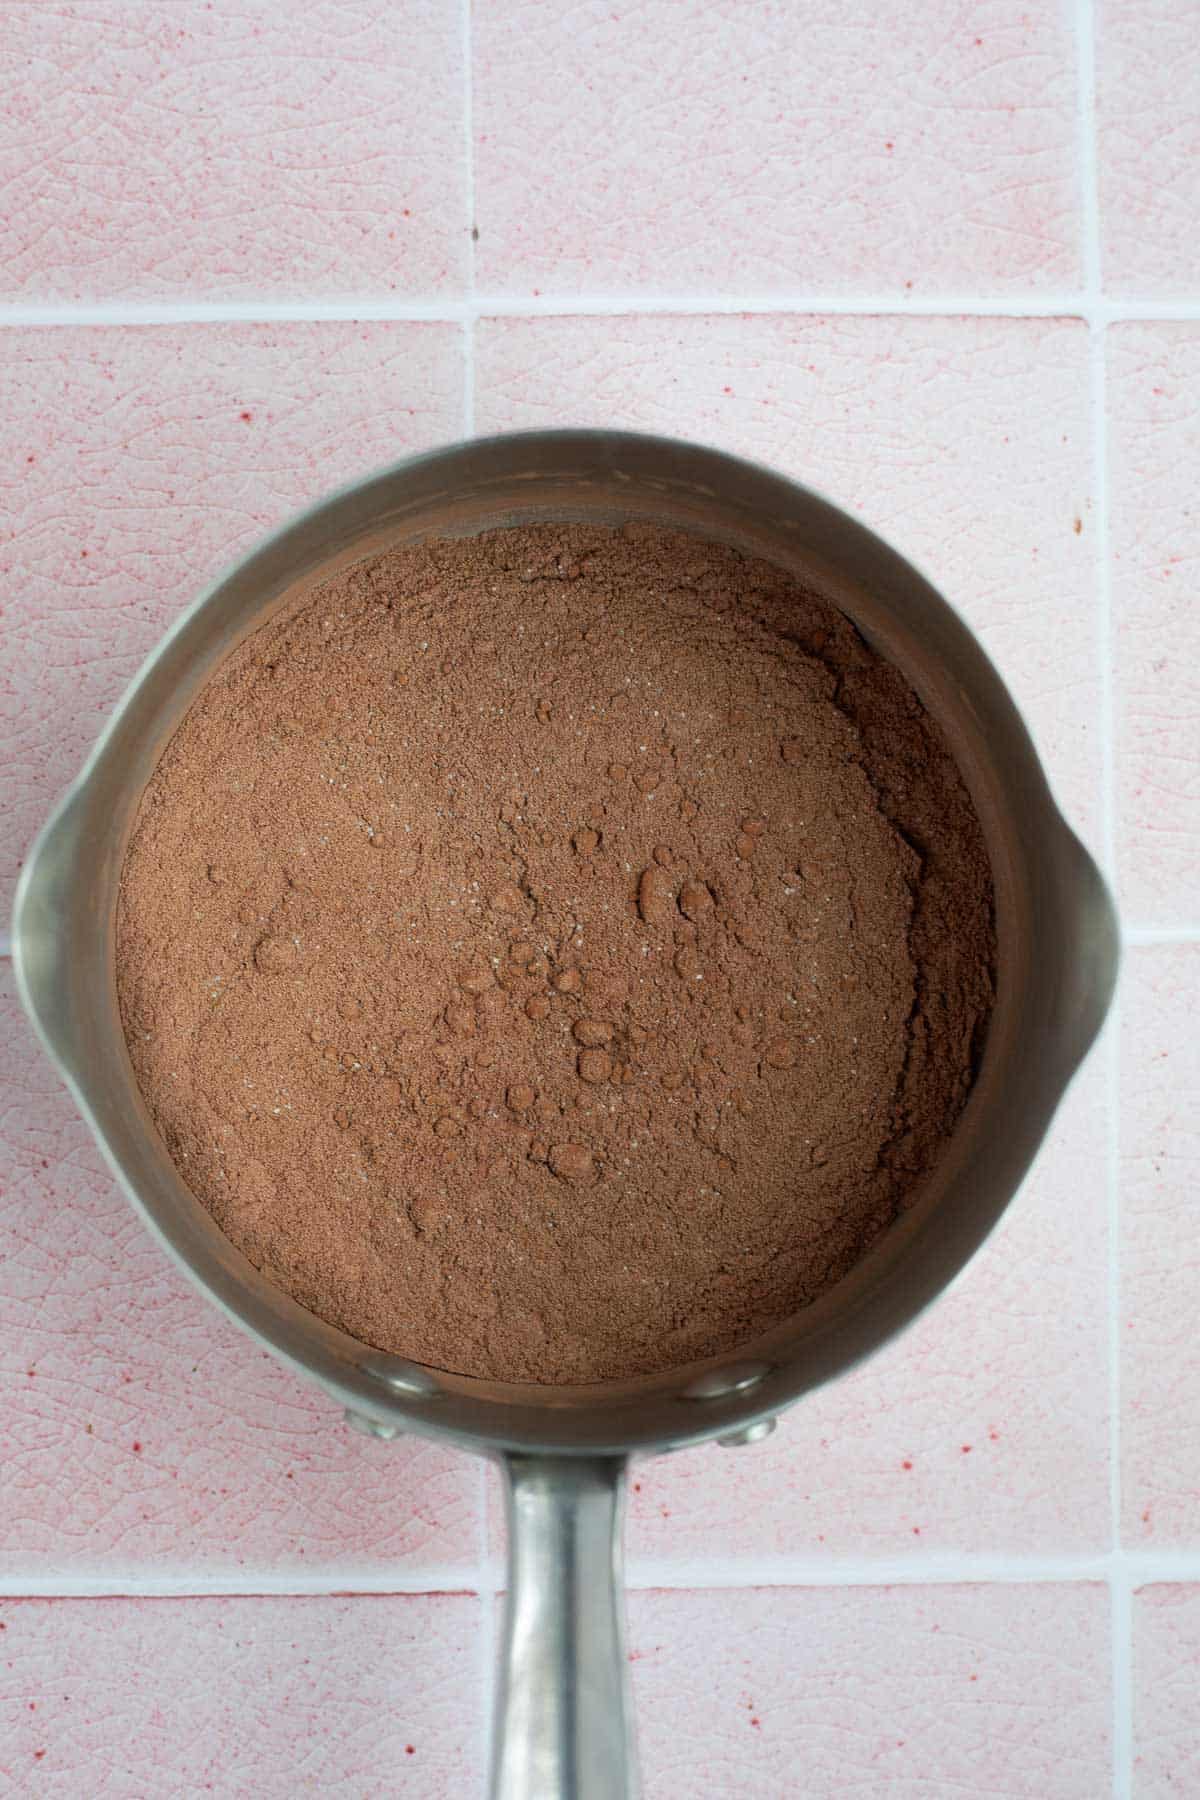 cocoa powder, protein powder, and sugar in silver pot.